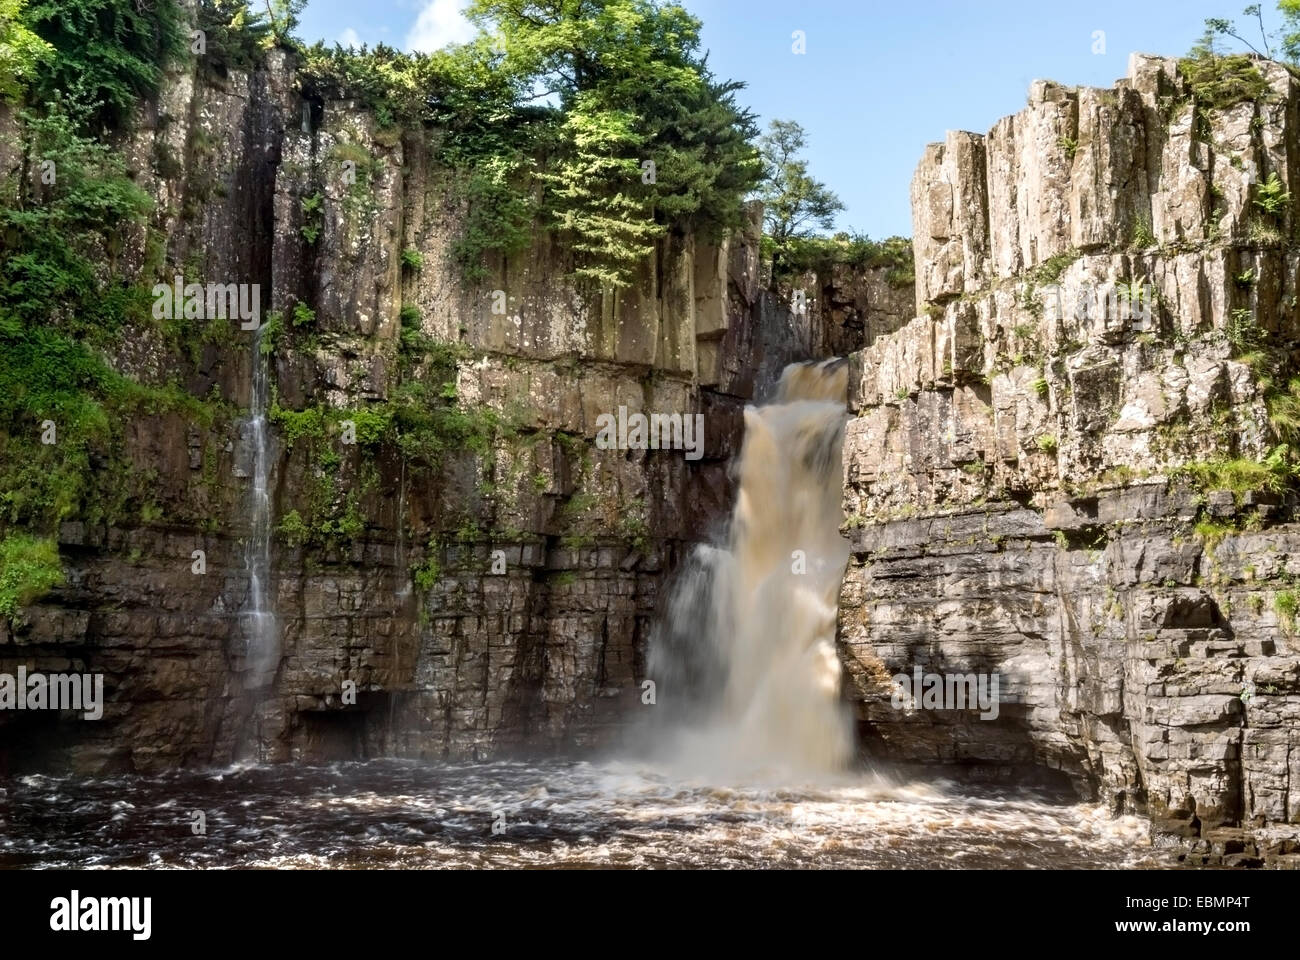 Force élevée, l'un des célèbre cascade Englands en Forêt-in-Teesdale, Nord de l'Angleterre Banque D'Images